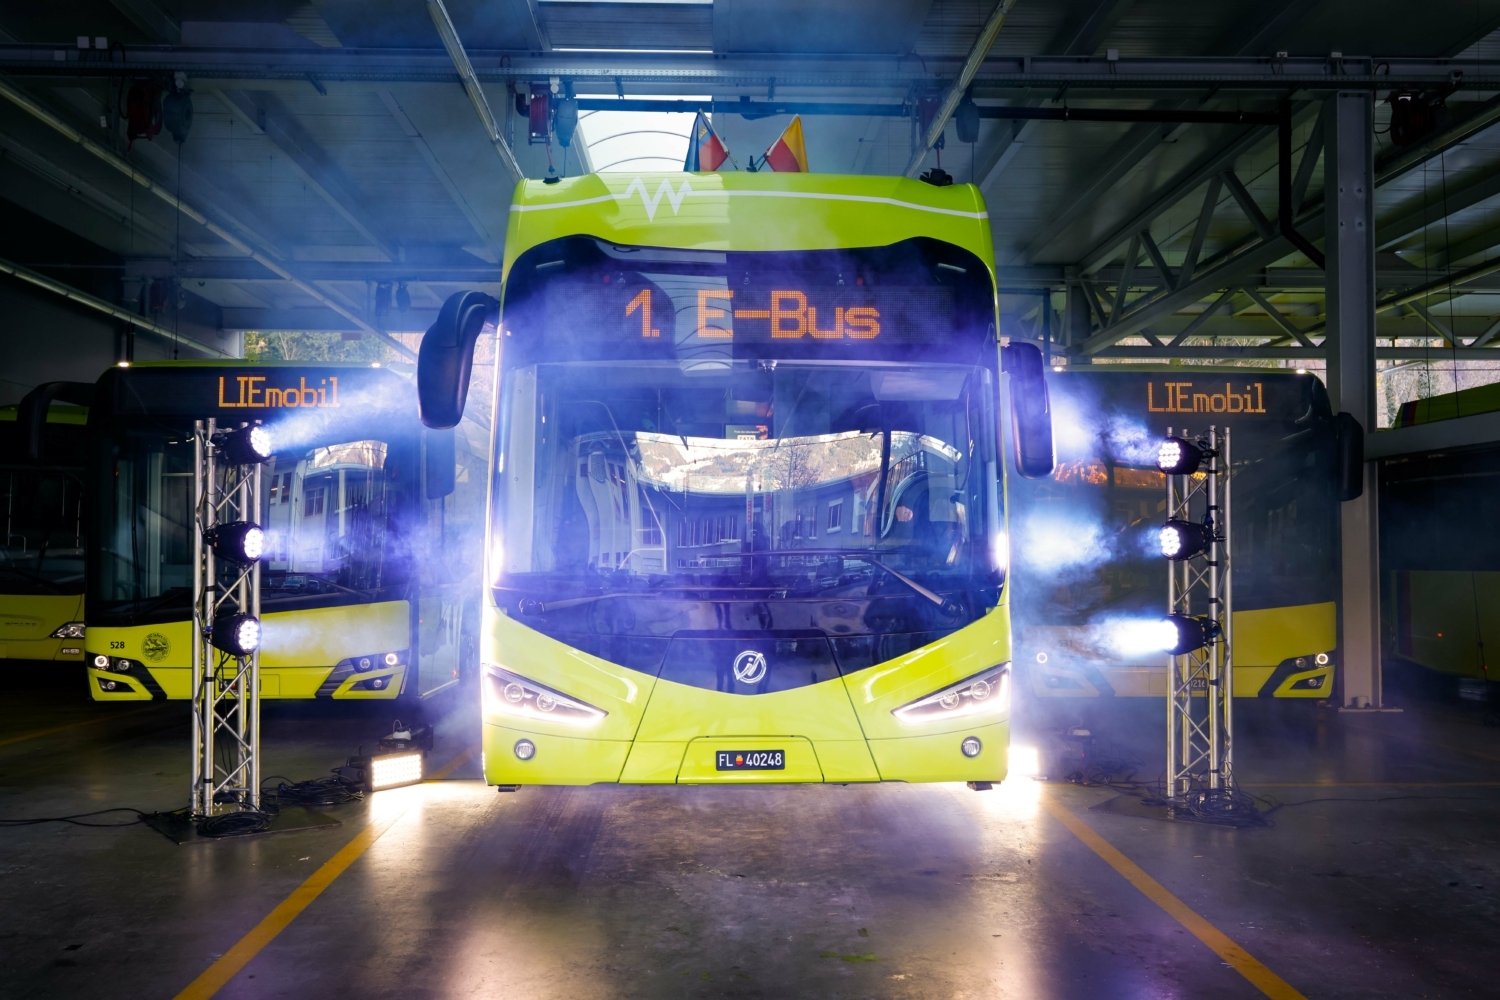 První dodaný elektrobus Irizar ie bus 12m v garážích dopravce. (foto: Eddy Risch/LIEmobil)